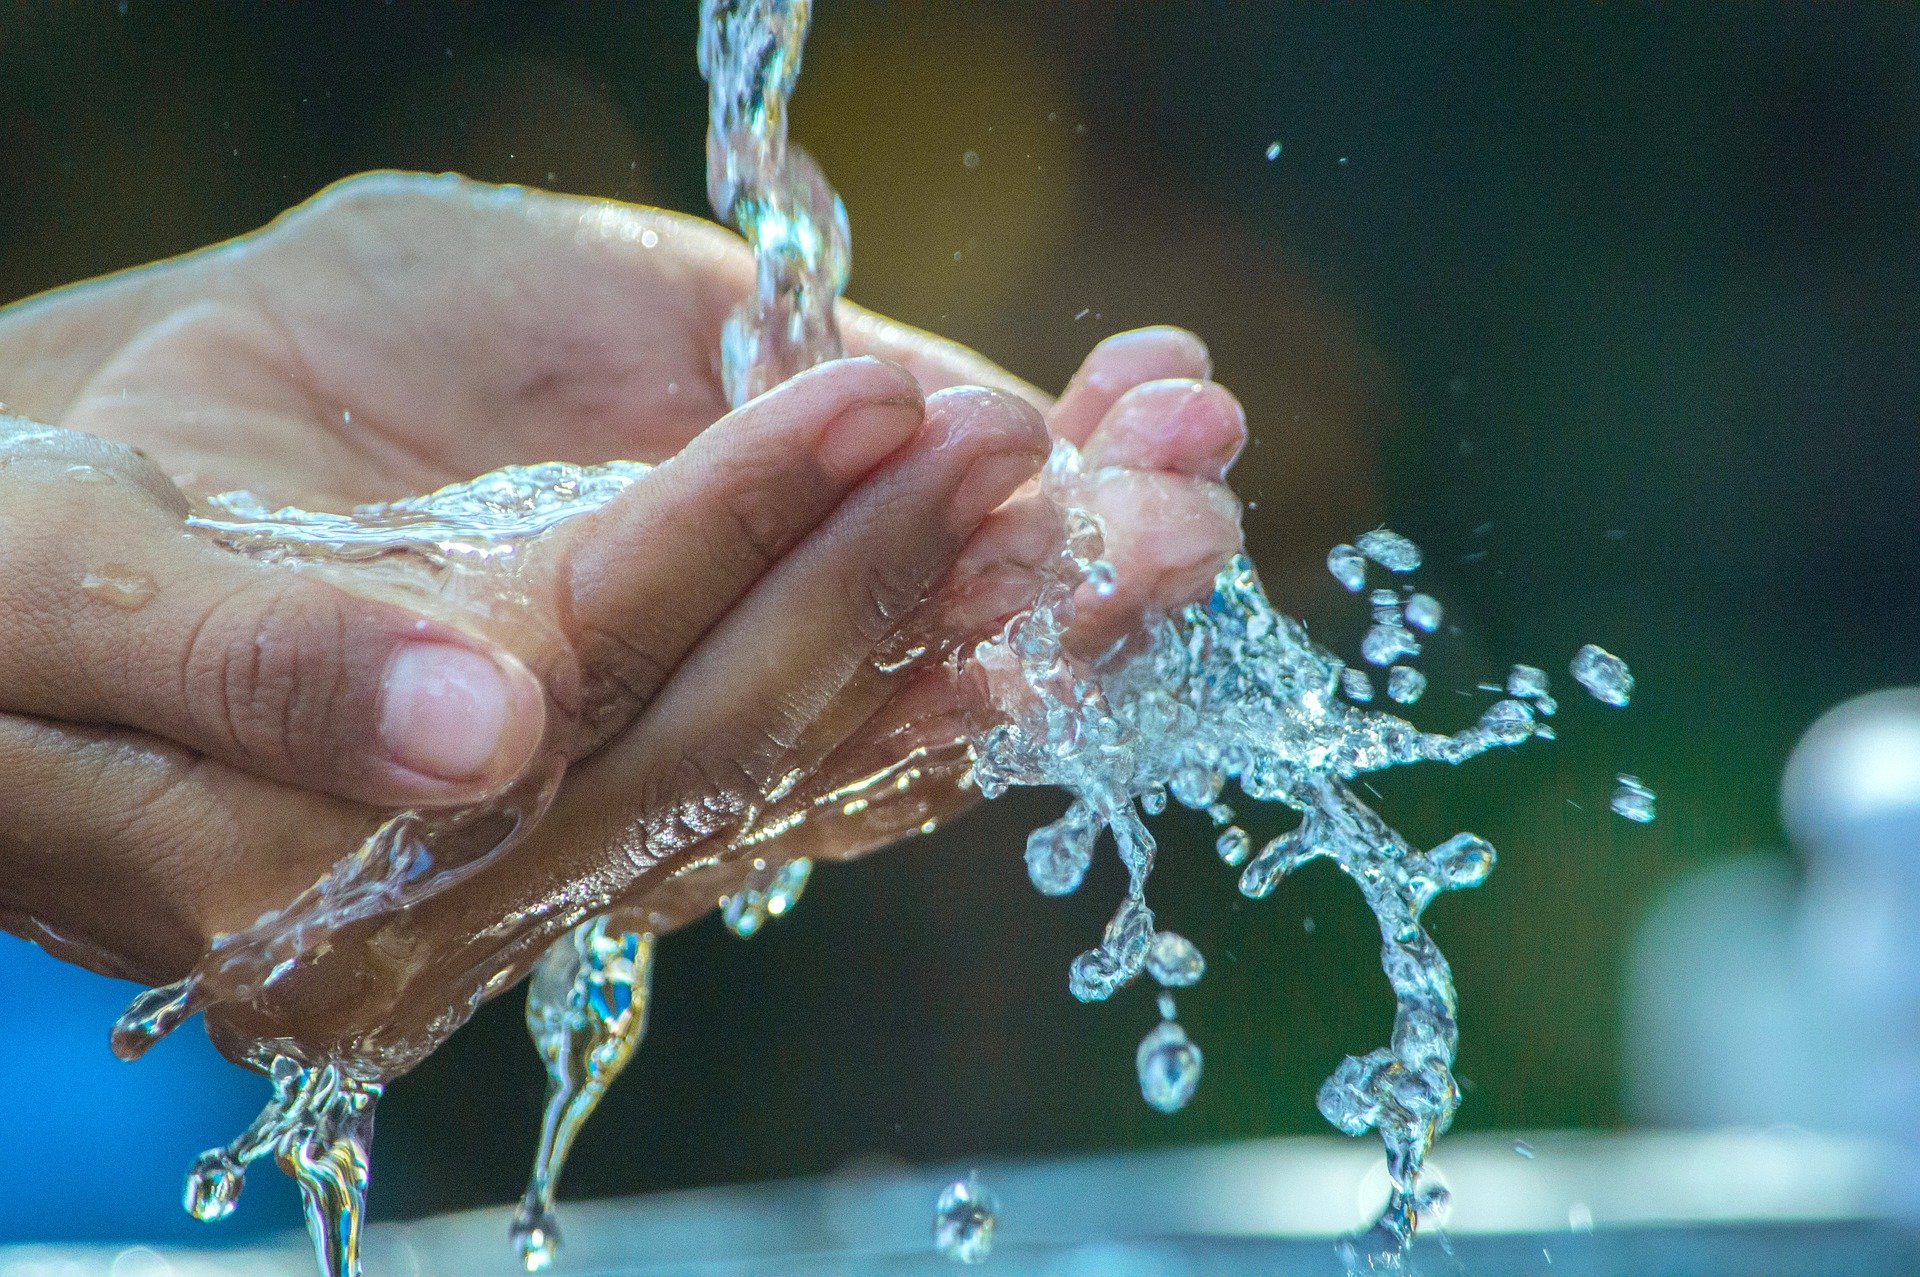 “El día mundial del agua nos debería hacer reflexionar en el distrito”, dijo Paso